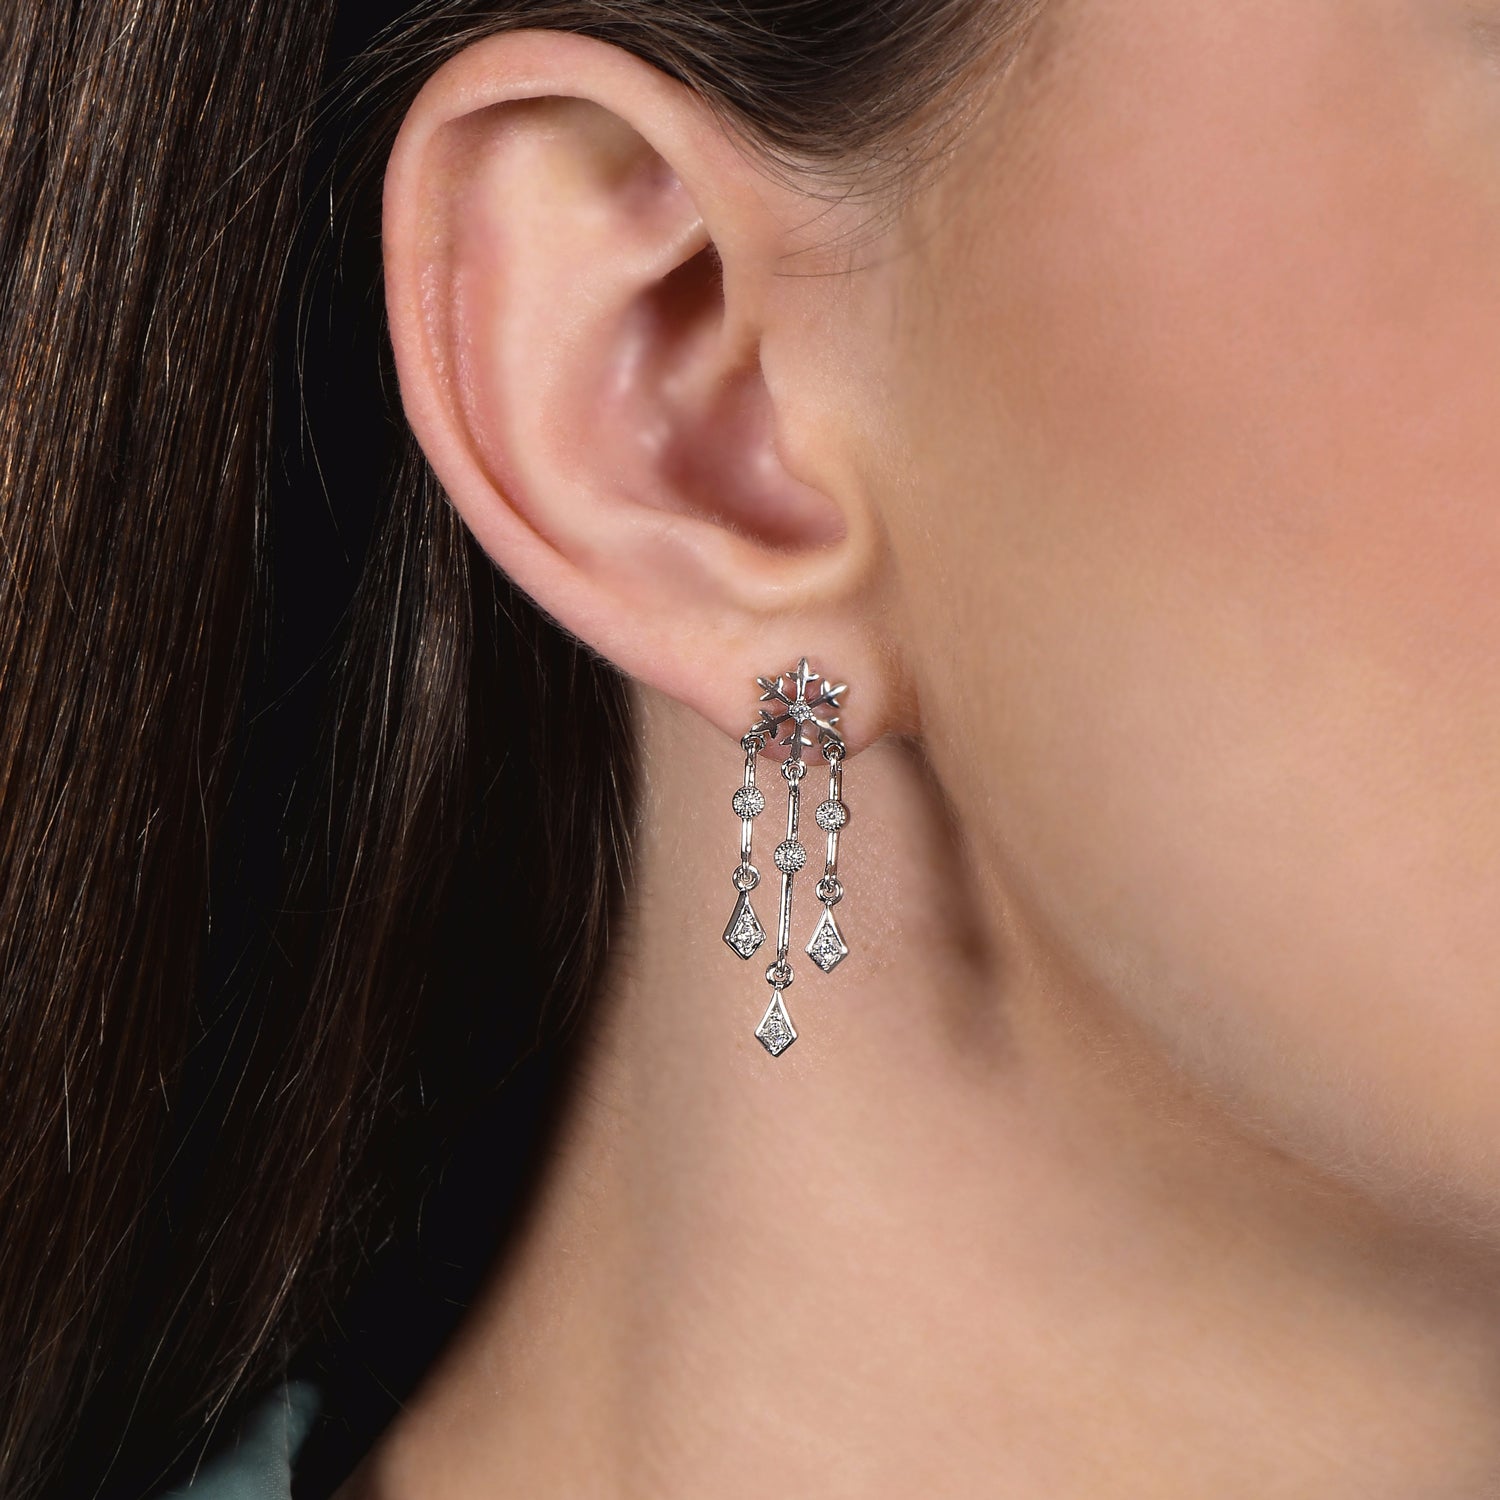 Buy Earrings Elsa Frozen in Fimo Polymer Clay Online in India  Etsy